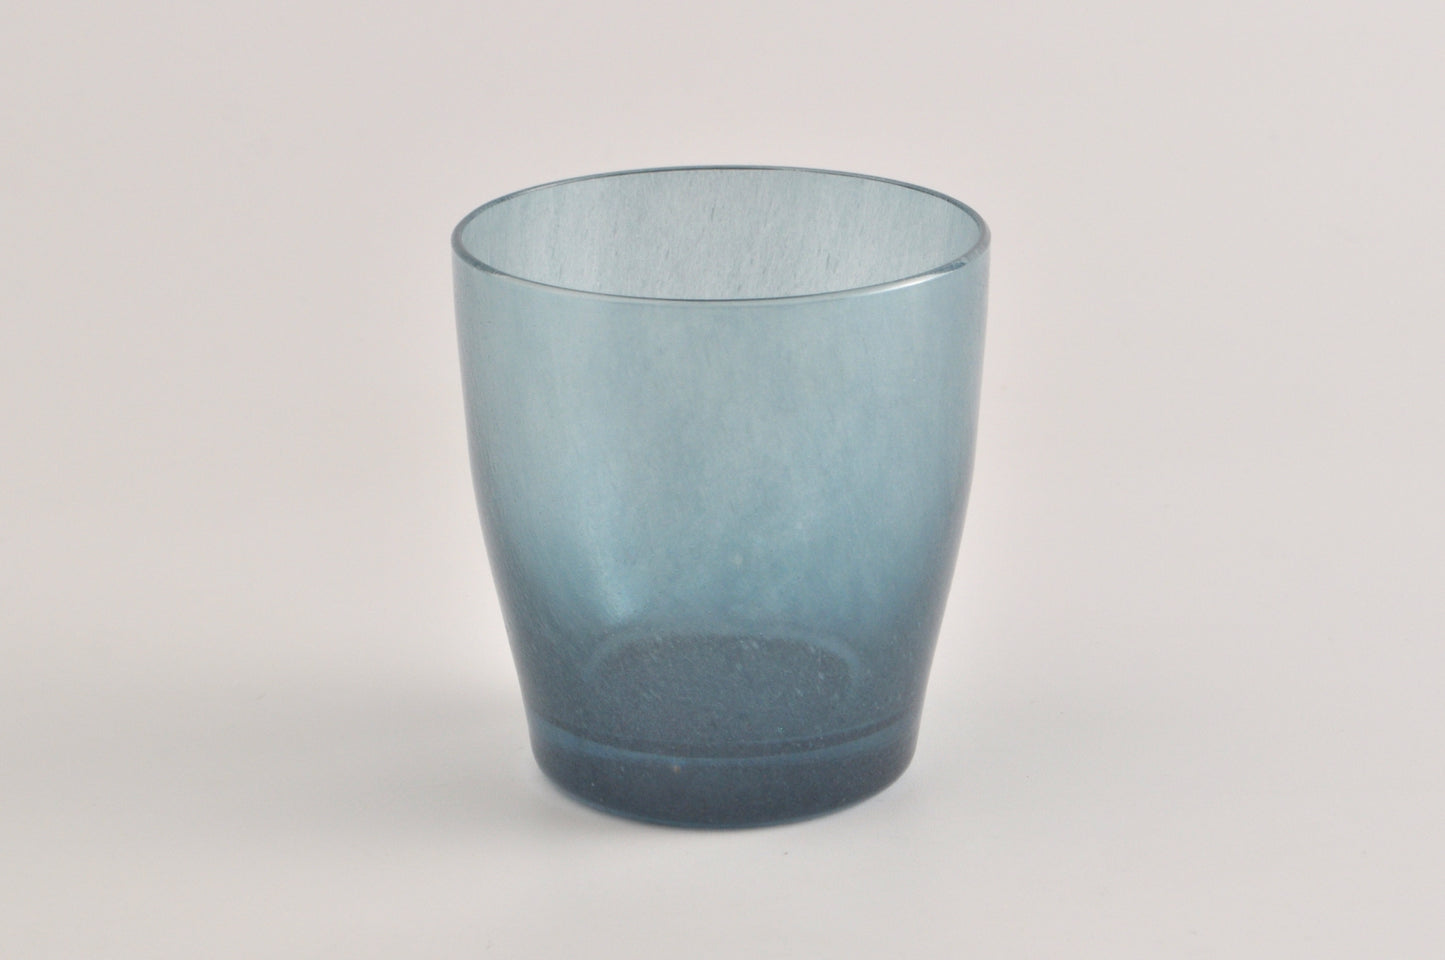 solito glass No.30 4003